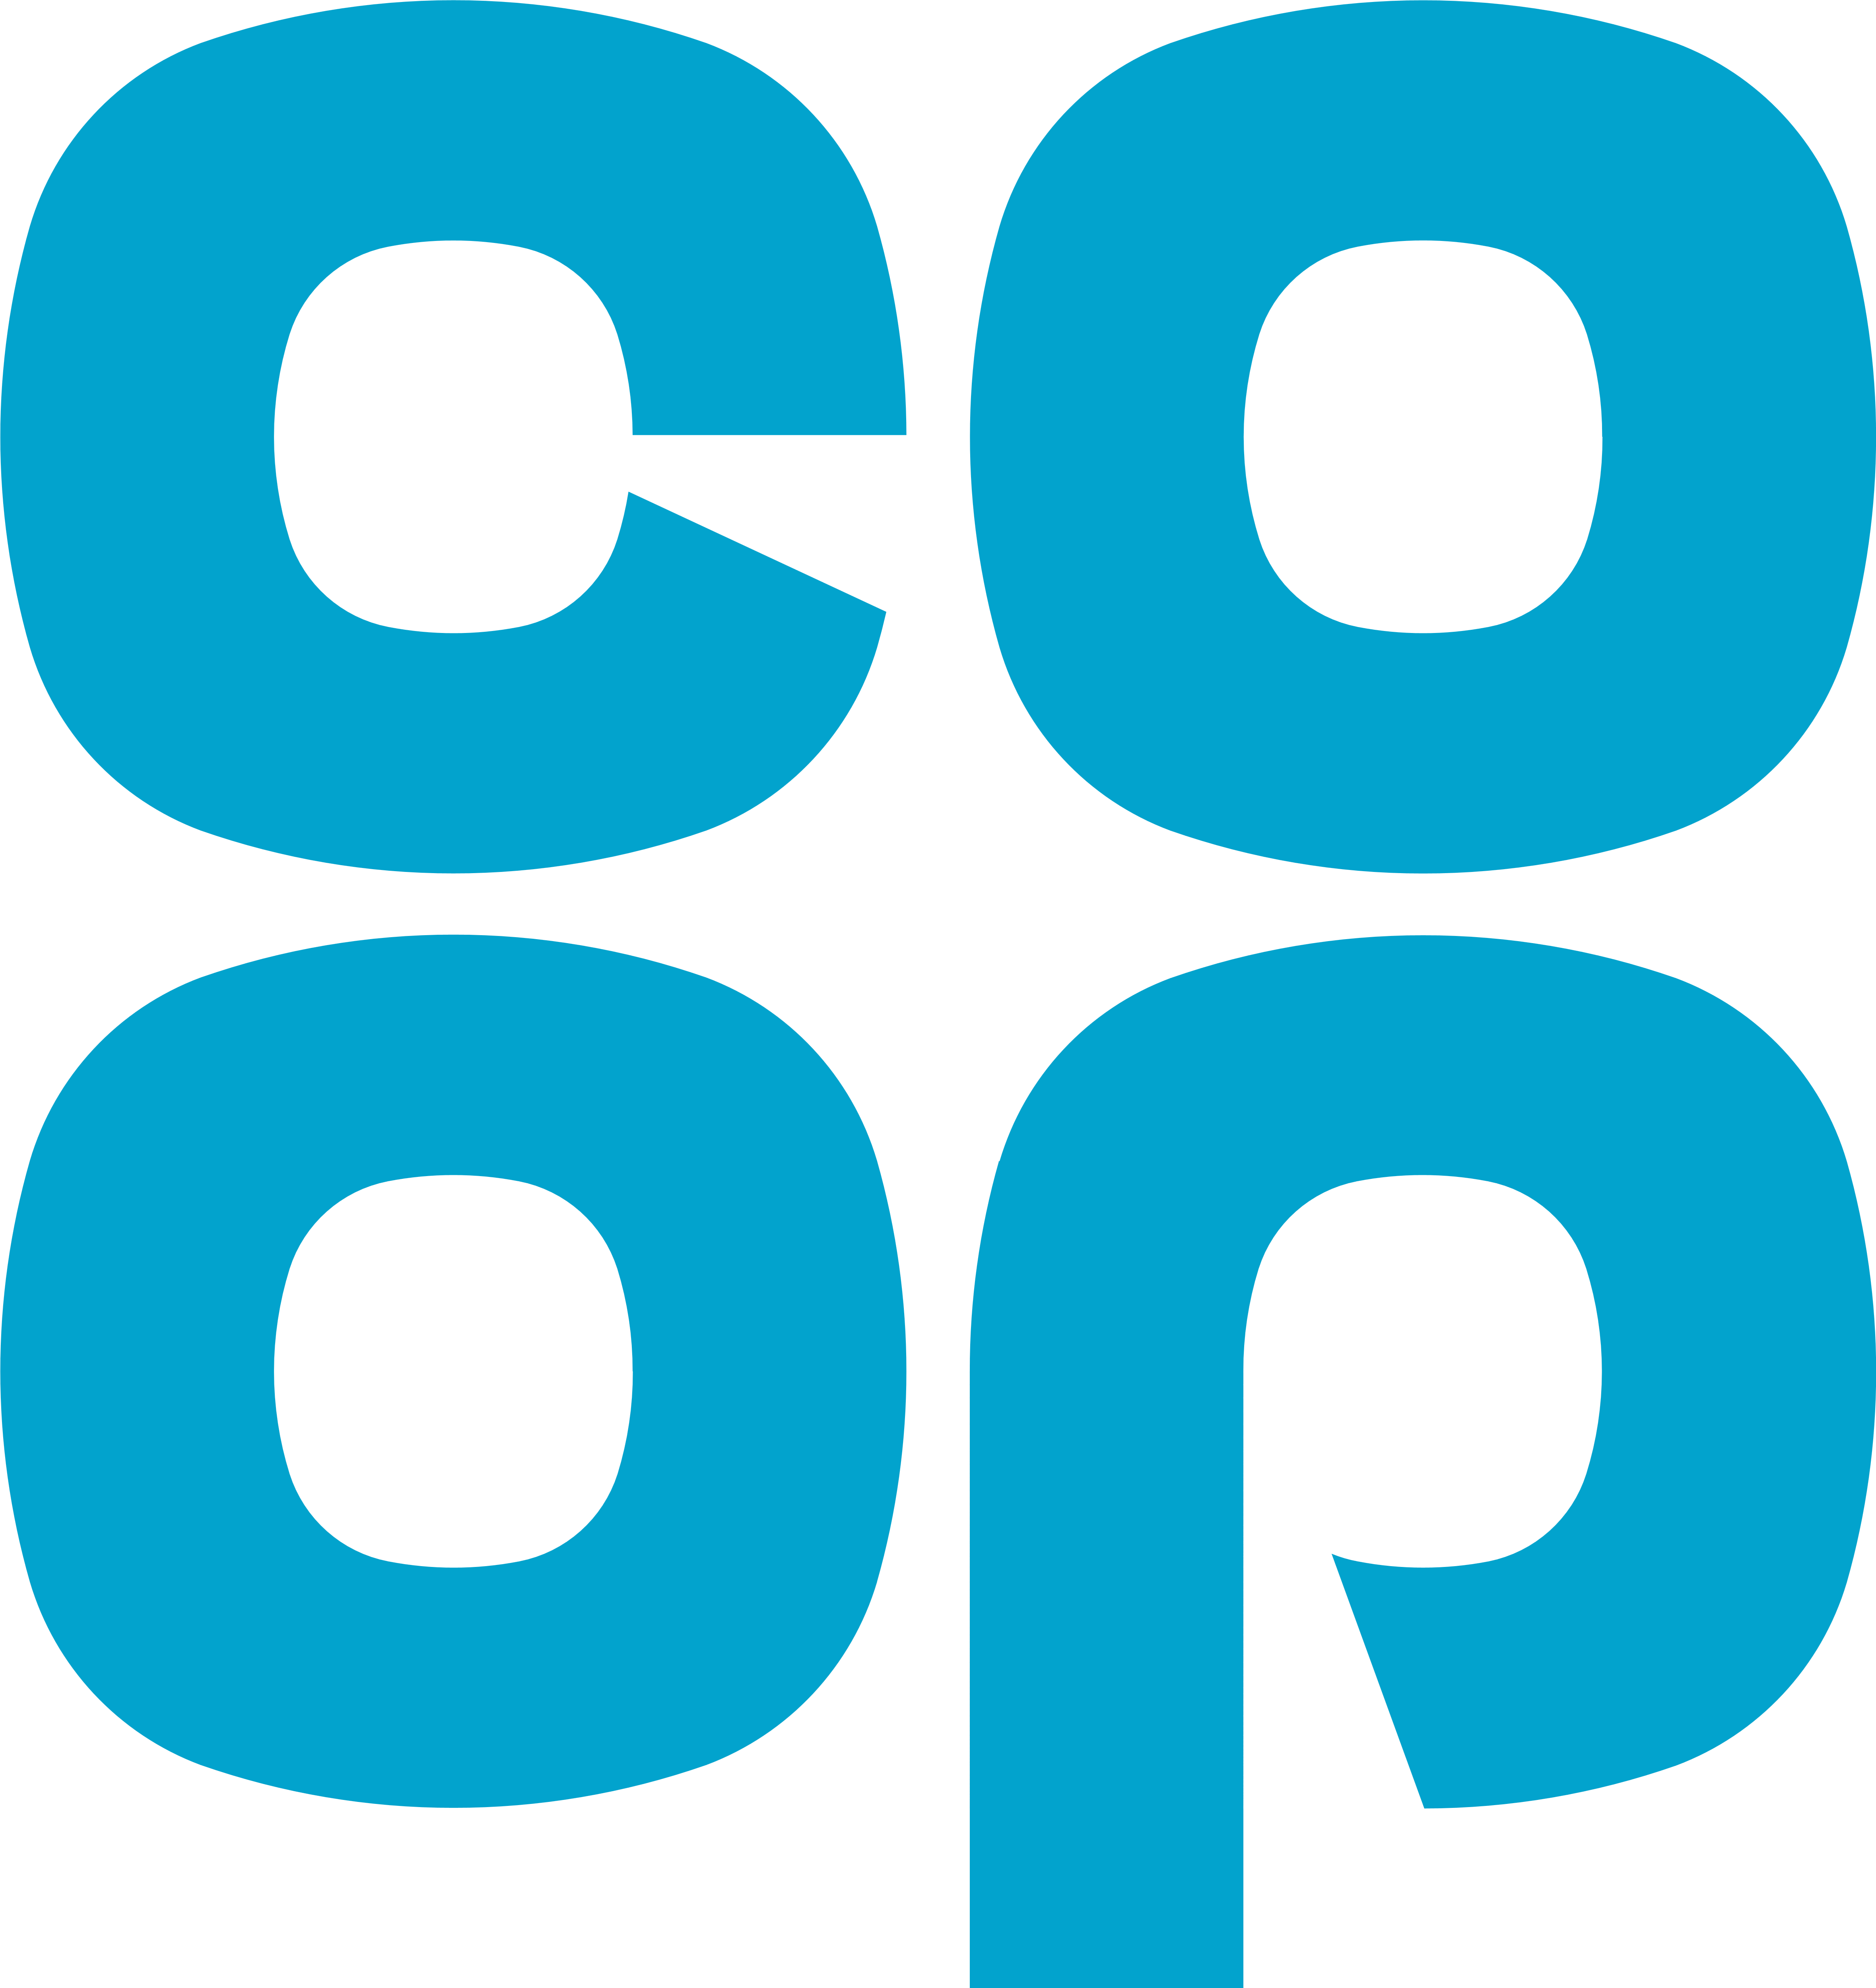 Co-op logo, logotype